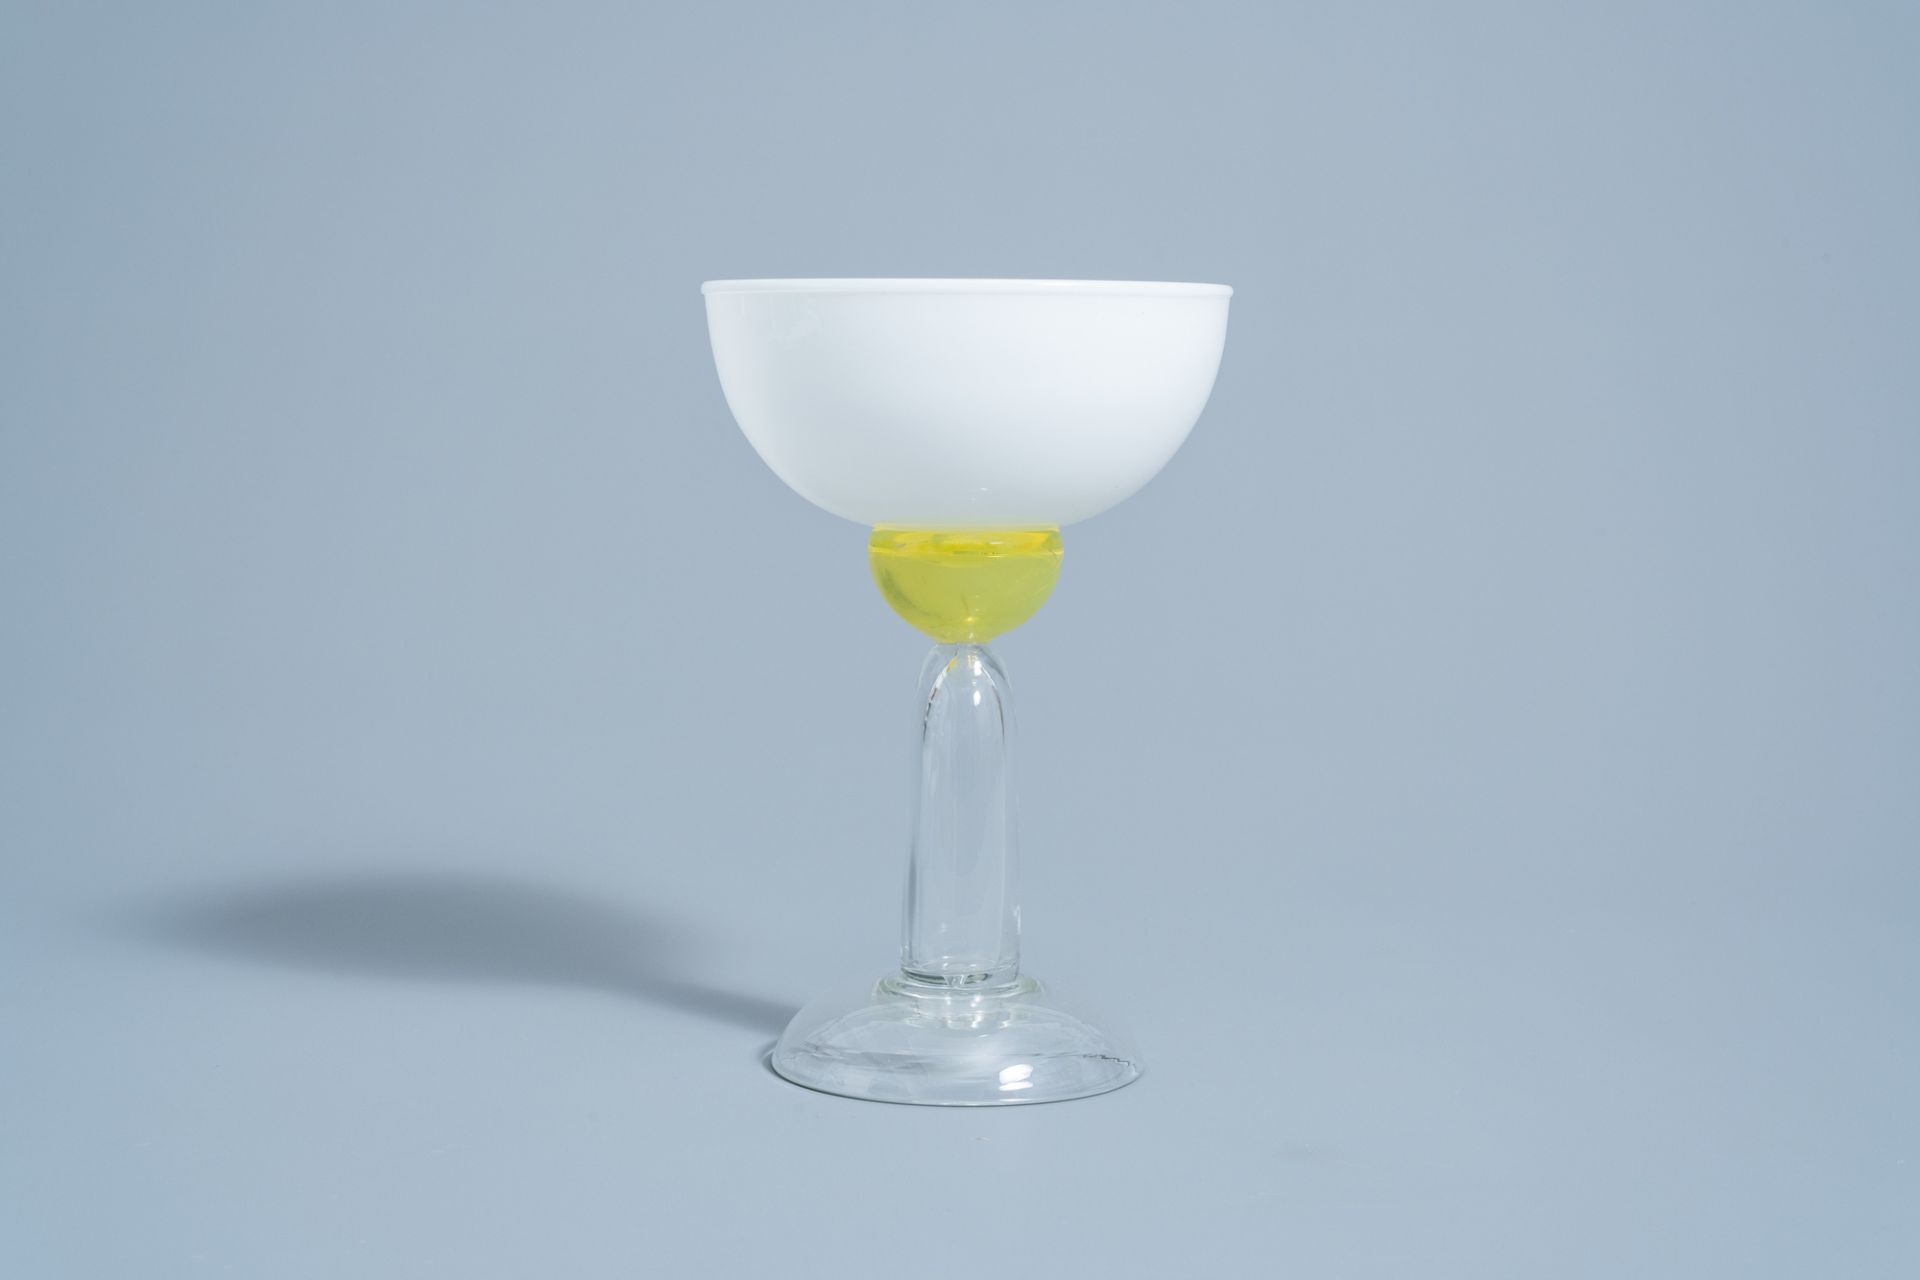 Marco Zanini (1954): 'Beltegeuse' Murano glass glass for Memphis Milano by Toso Vetri d'Arte, [1983] - Image 5 of 9